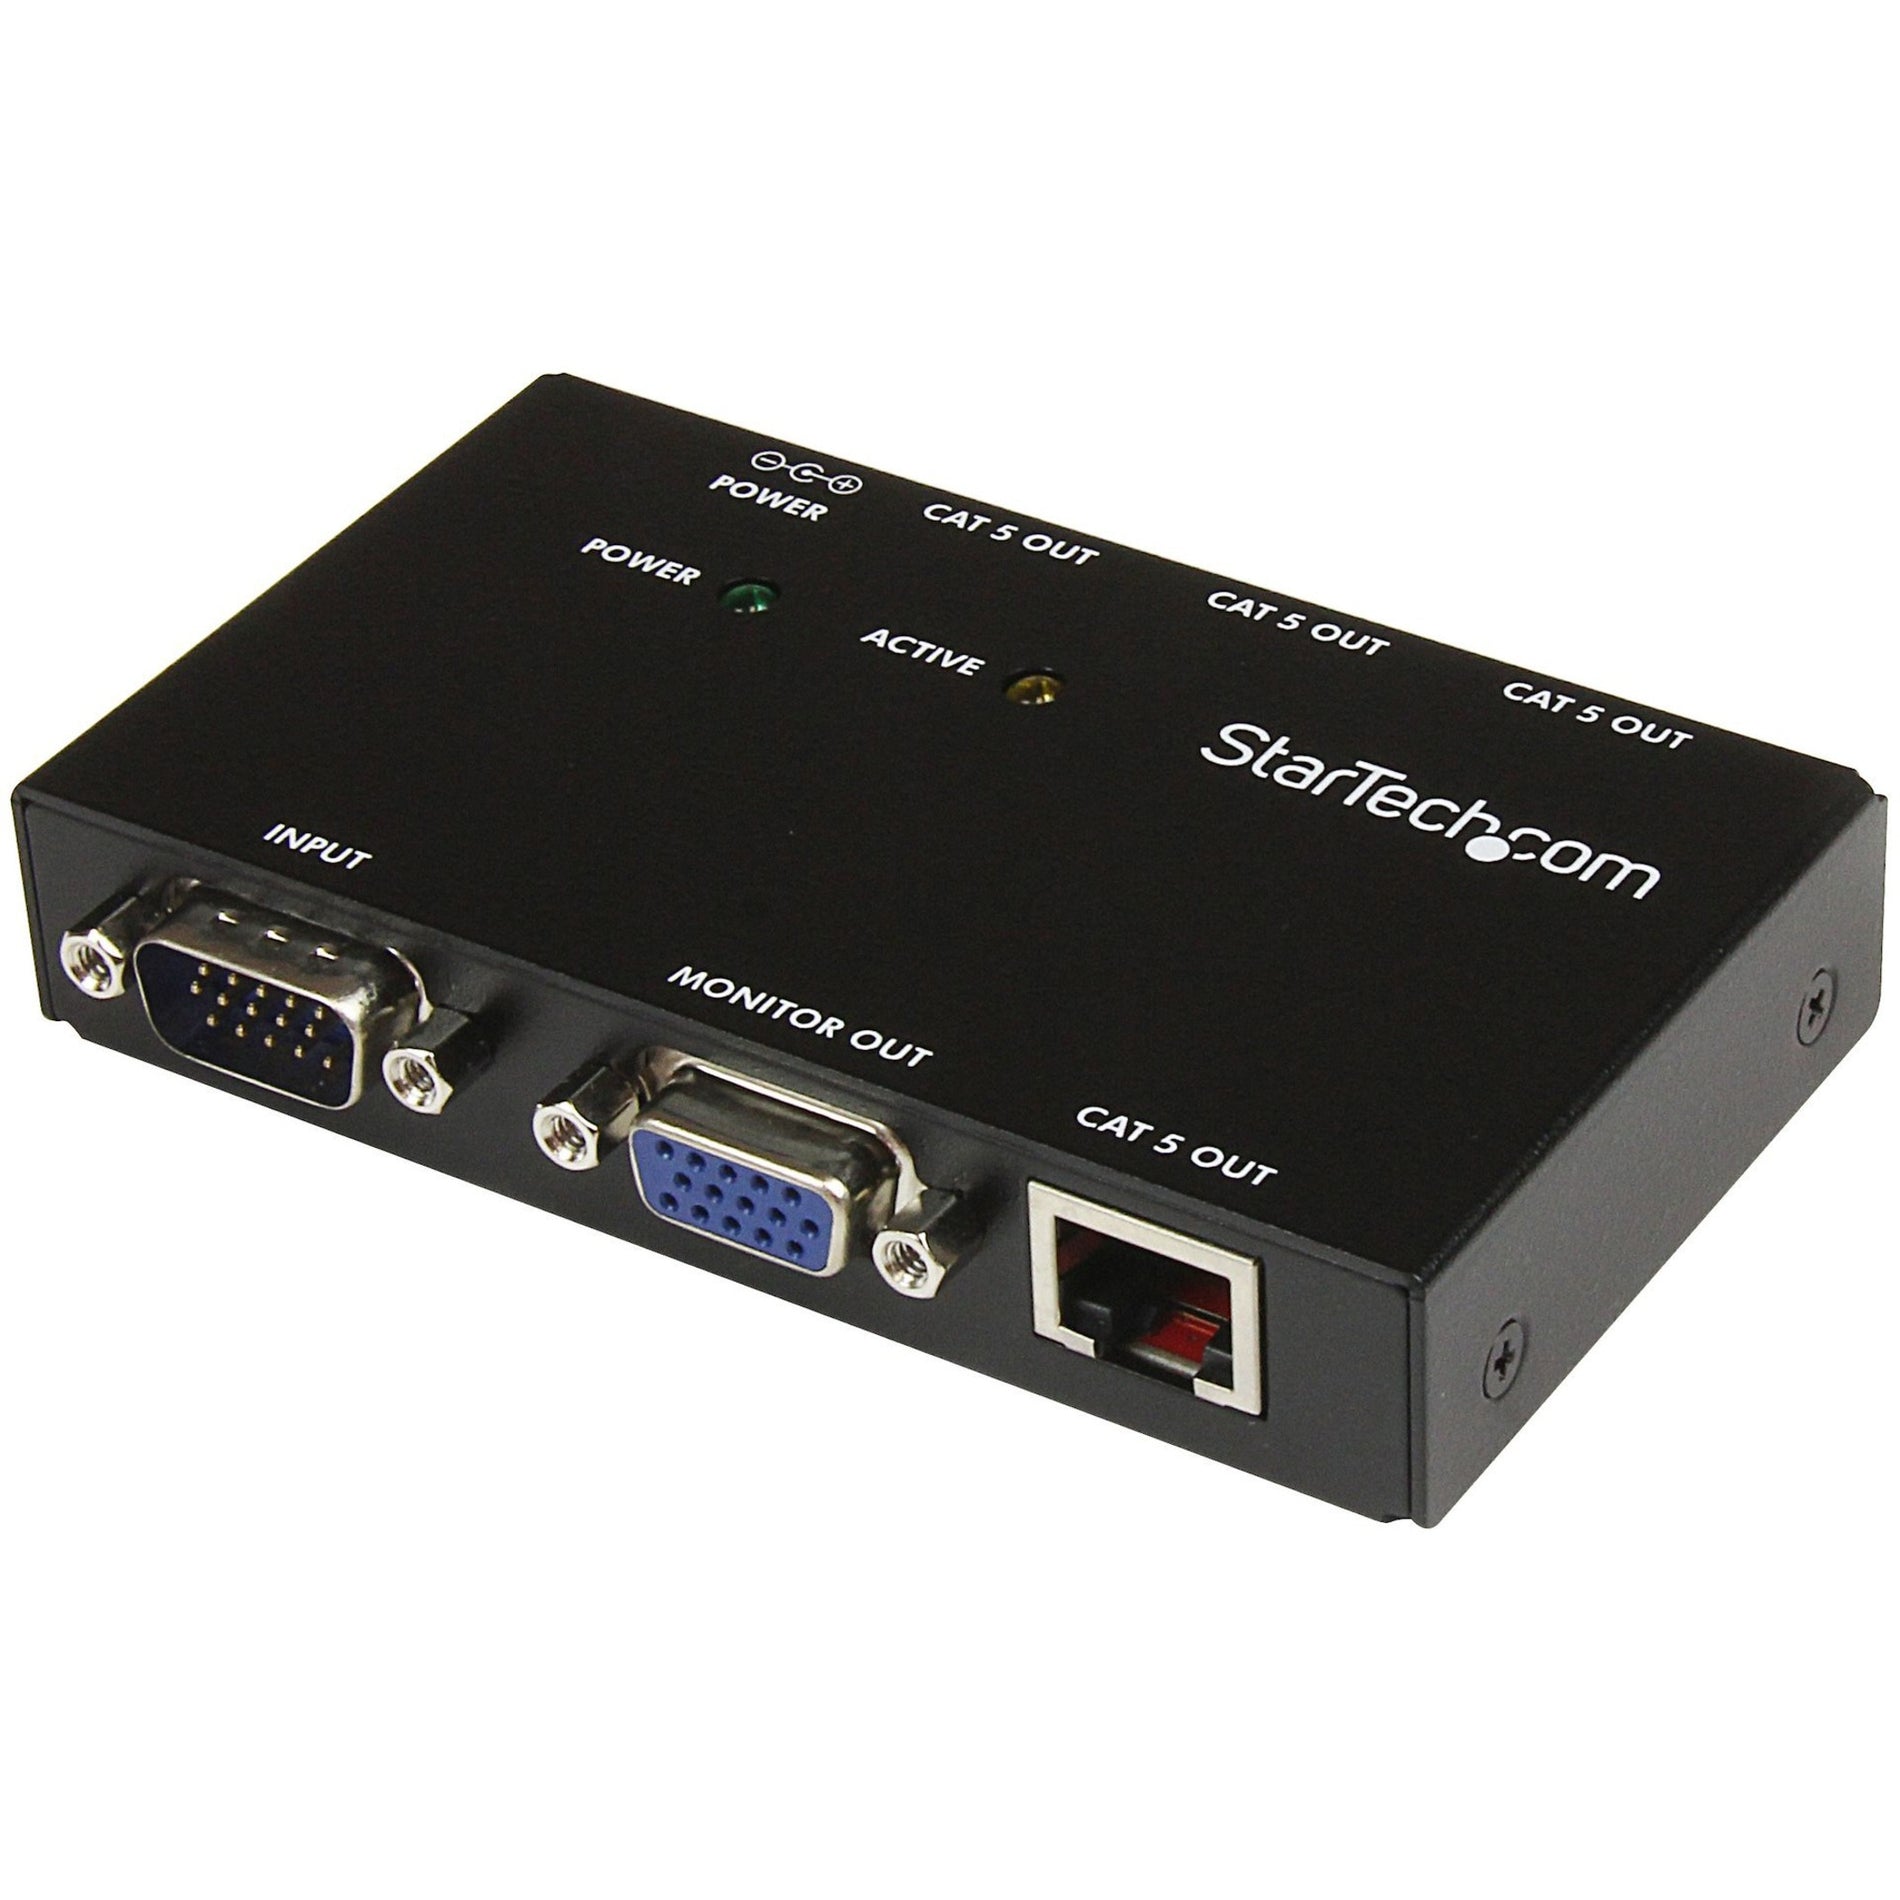 StarTech.com ST1214T 4 Port VGA Video Extender over Cat 5, Extend VGA Signals up to 492.13 ft